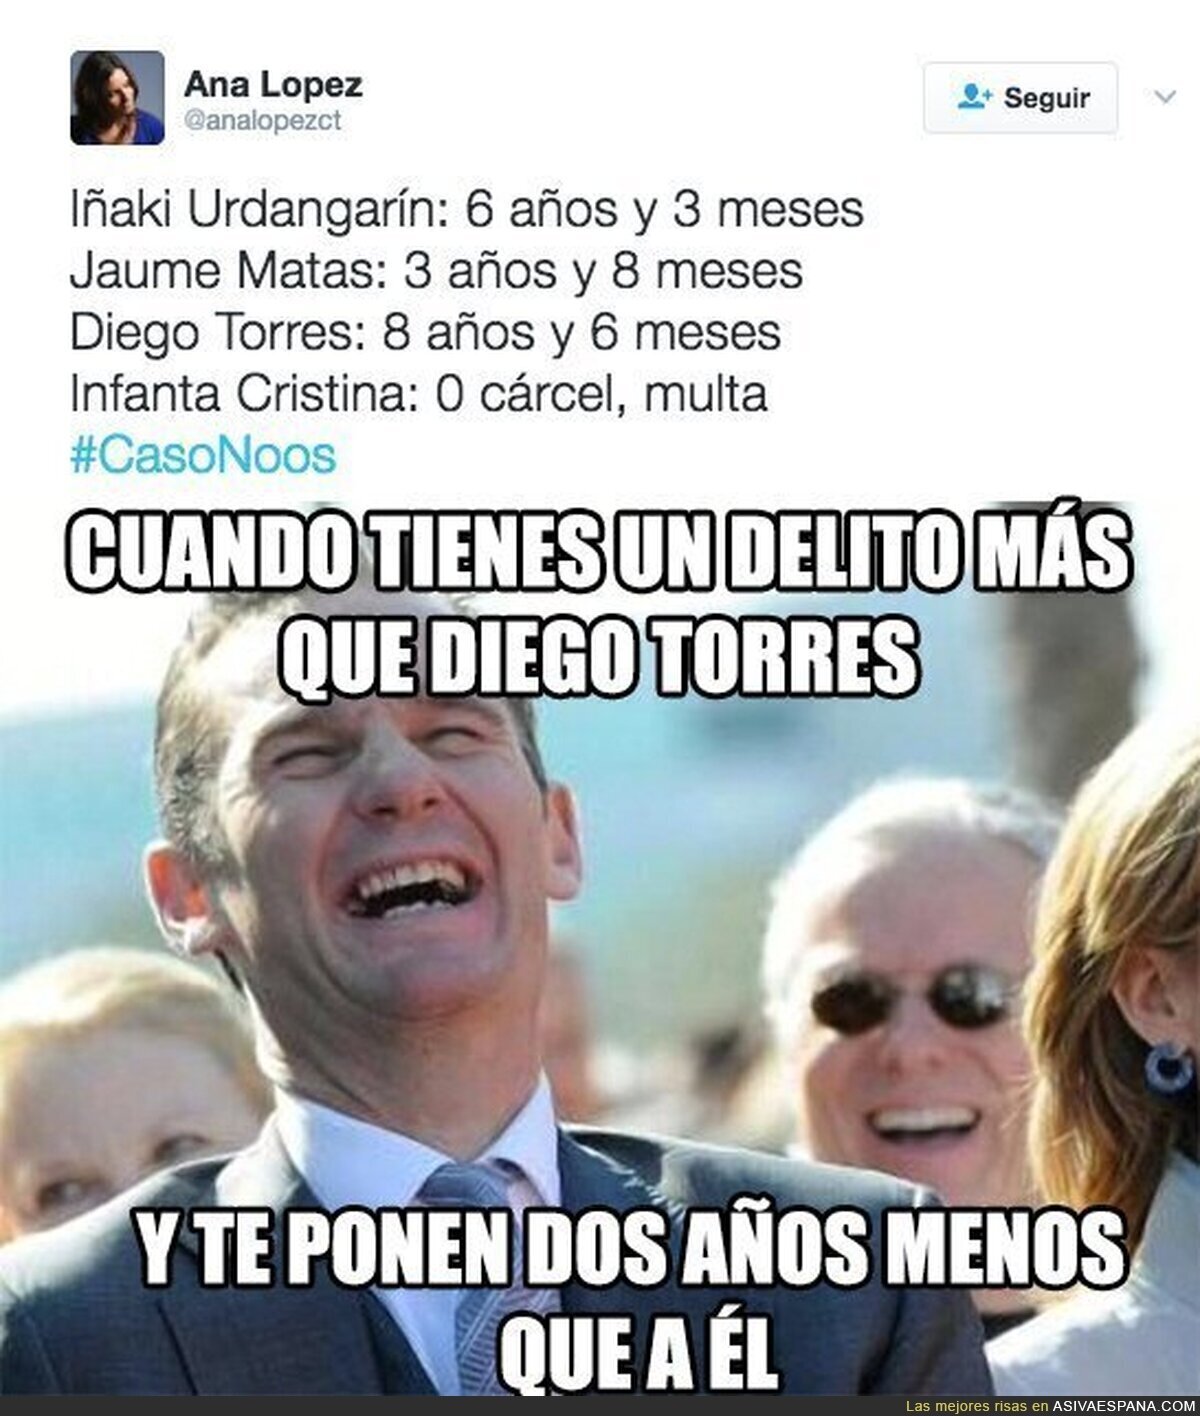 La increíble diferencia de condena entre Iñaki Urdangarín y Diego Torres